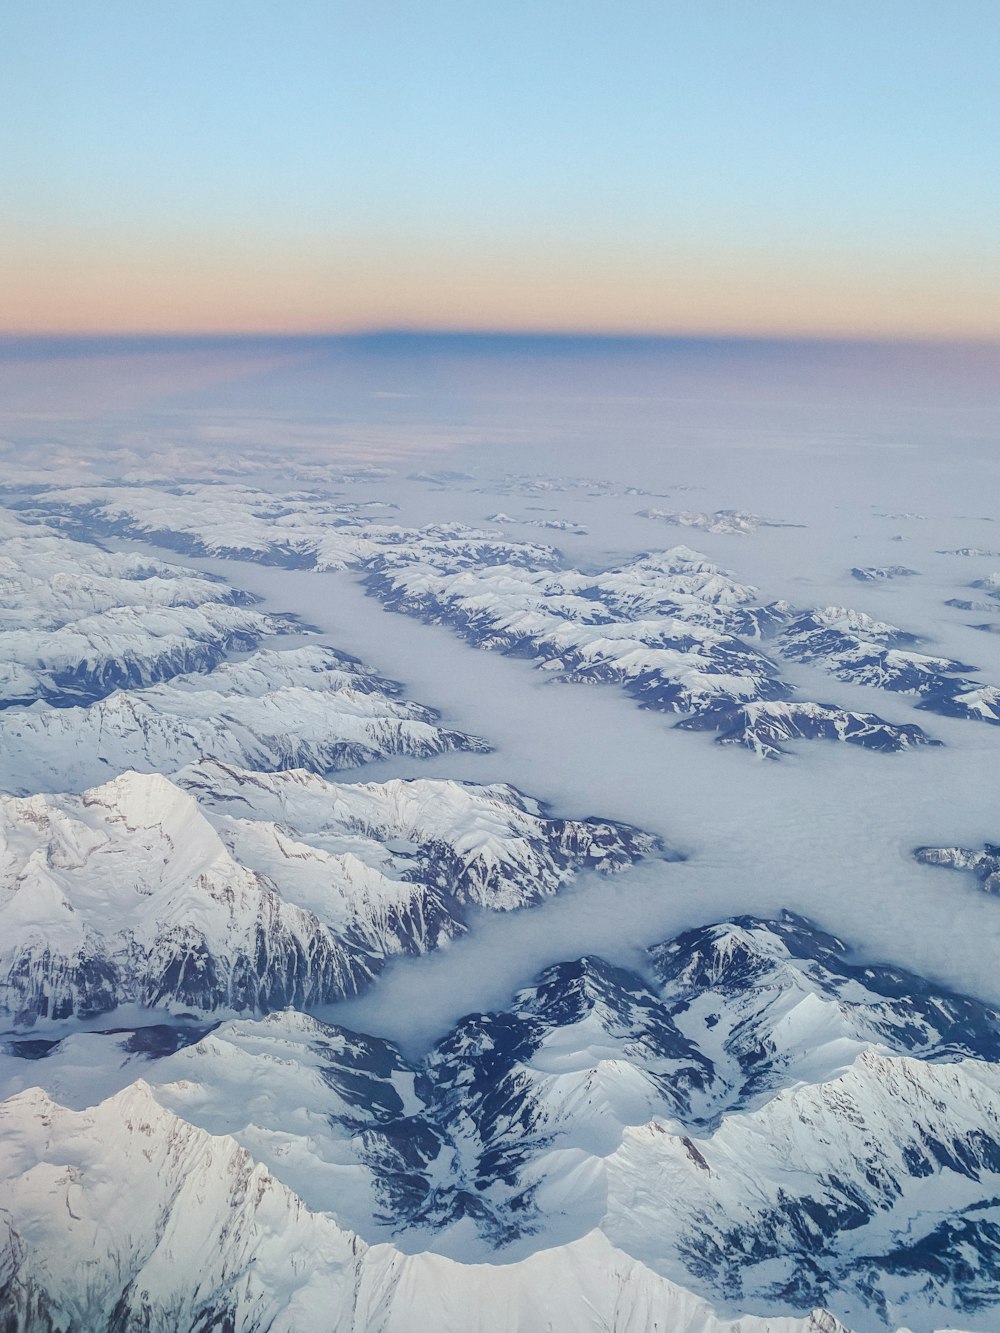 une vue aérienne des montagnes et des vallées enneigées